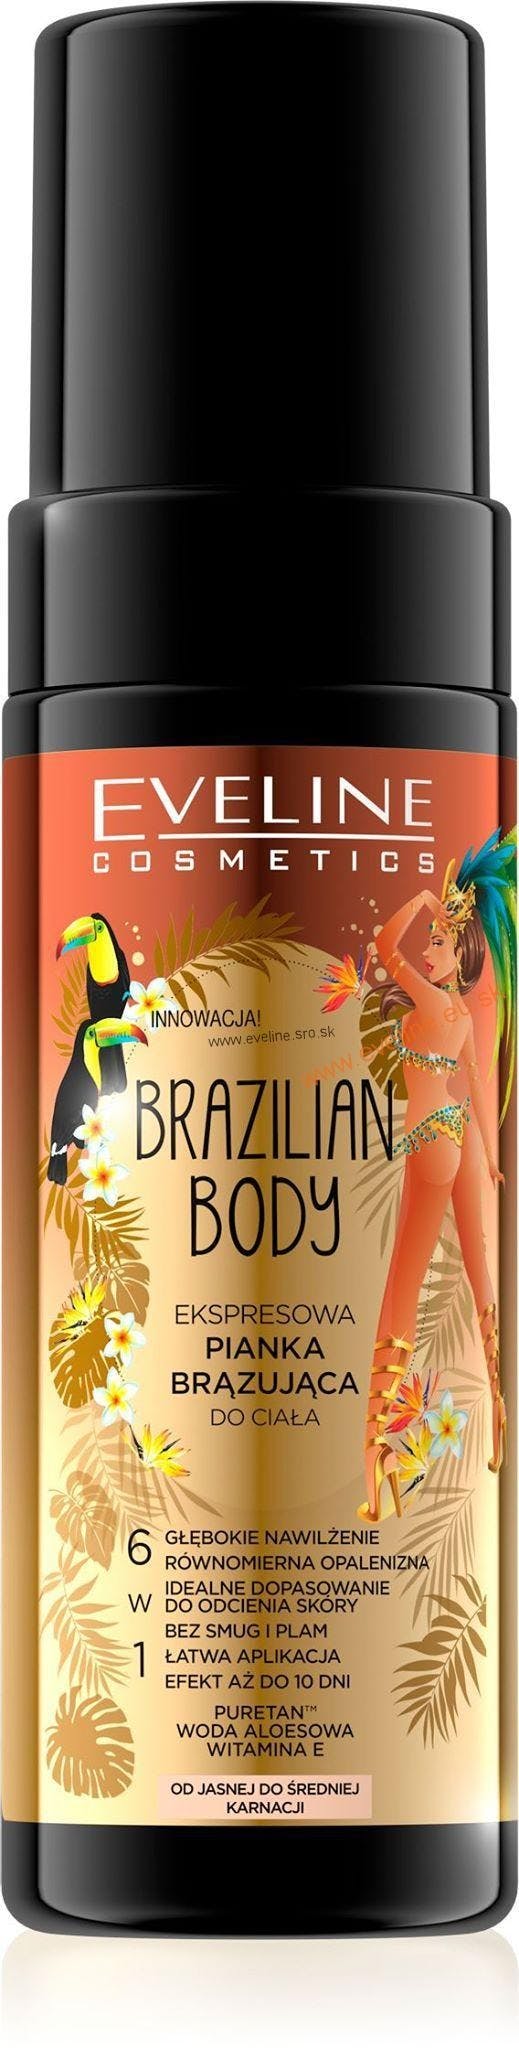 Eveline Brazilian Body Express Body Bronzing Foam 150 ml